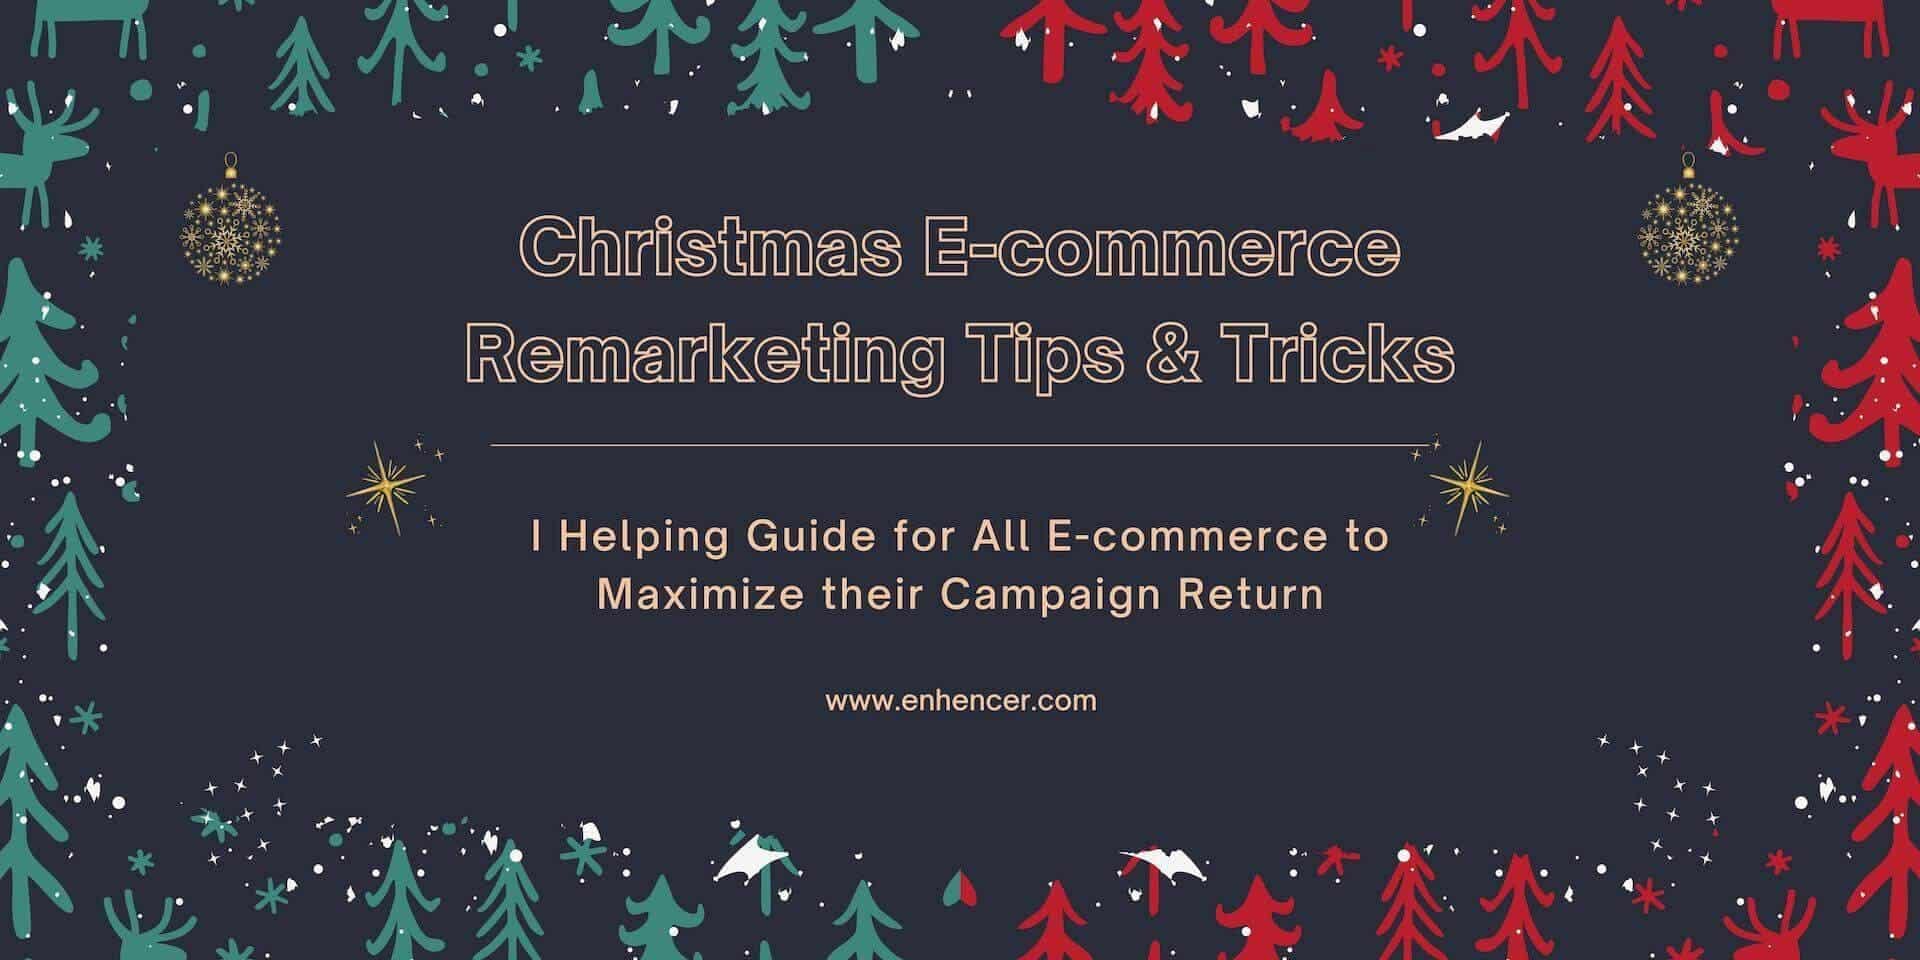 Christmas E-commerce Remarketing Tips & Tricks